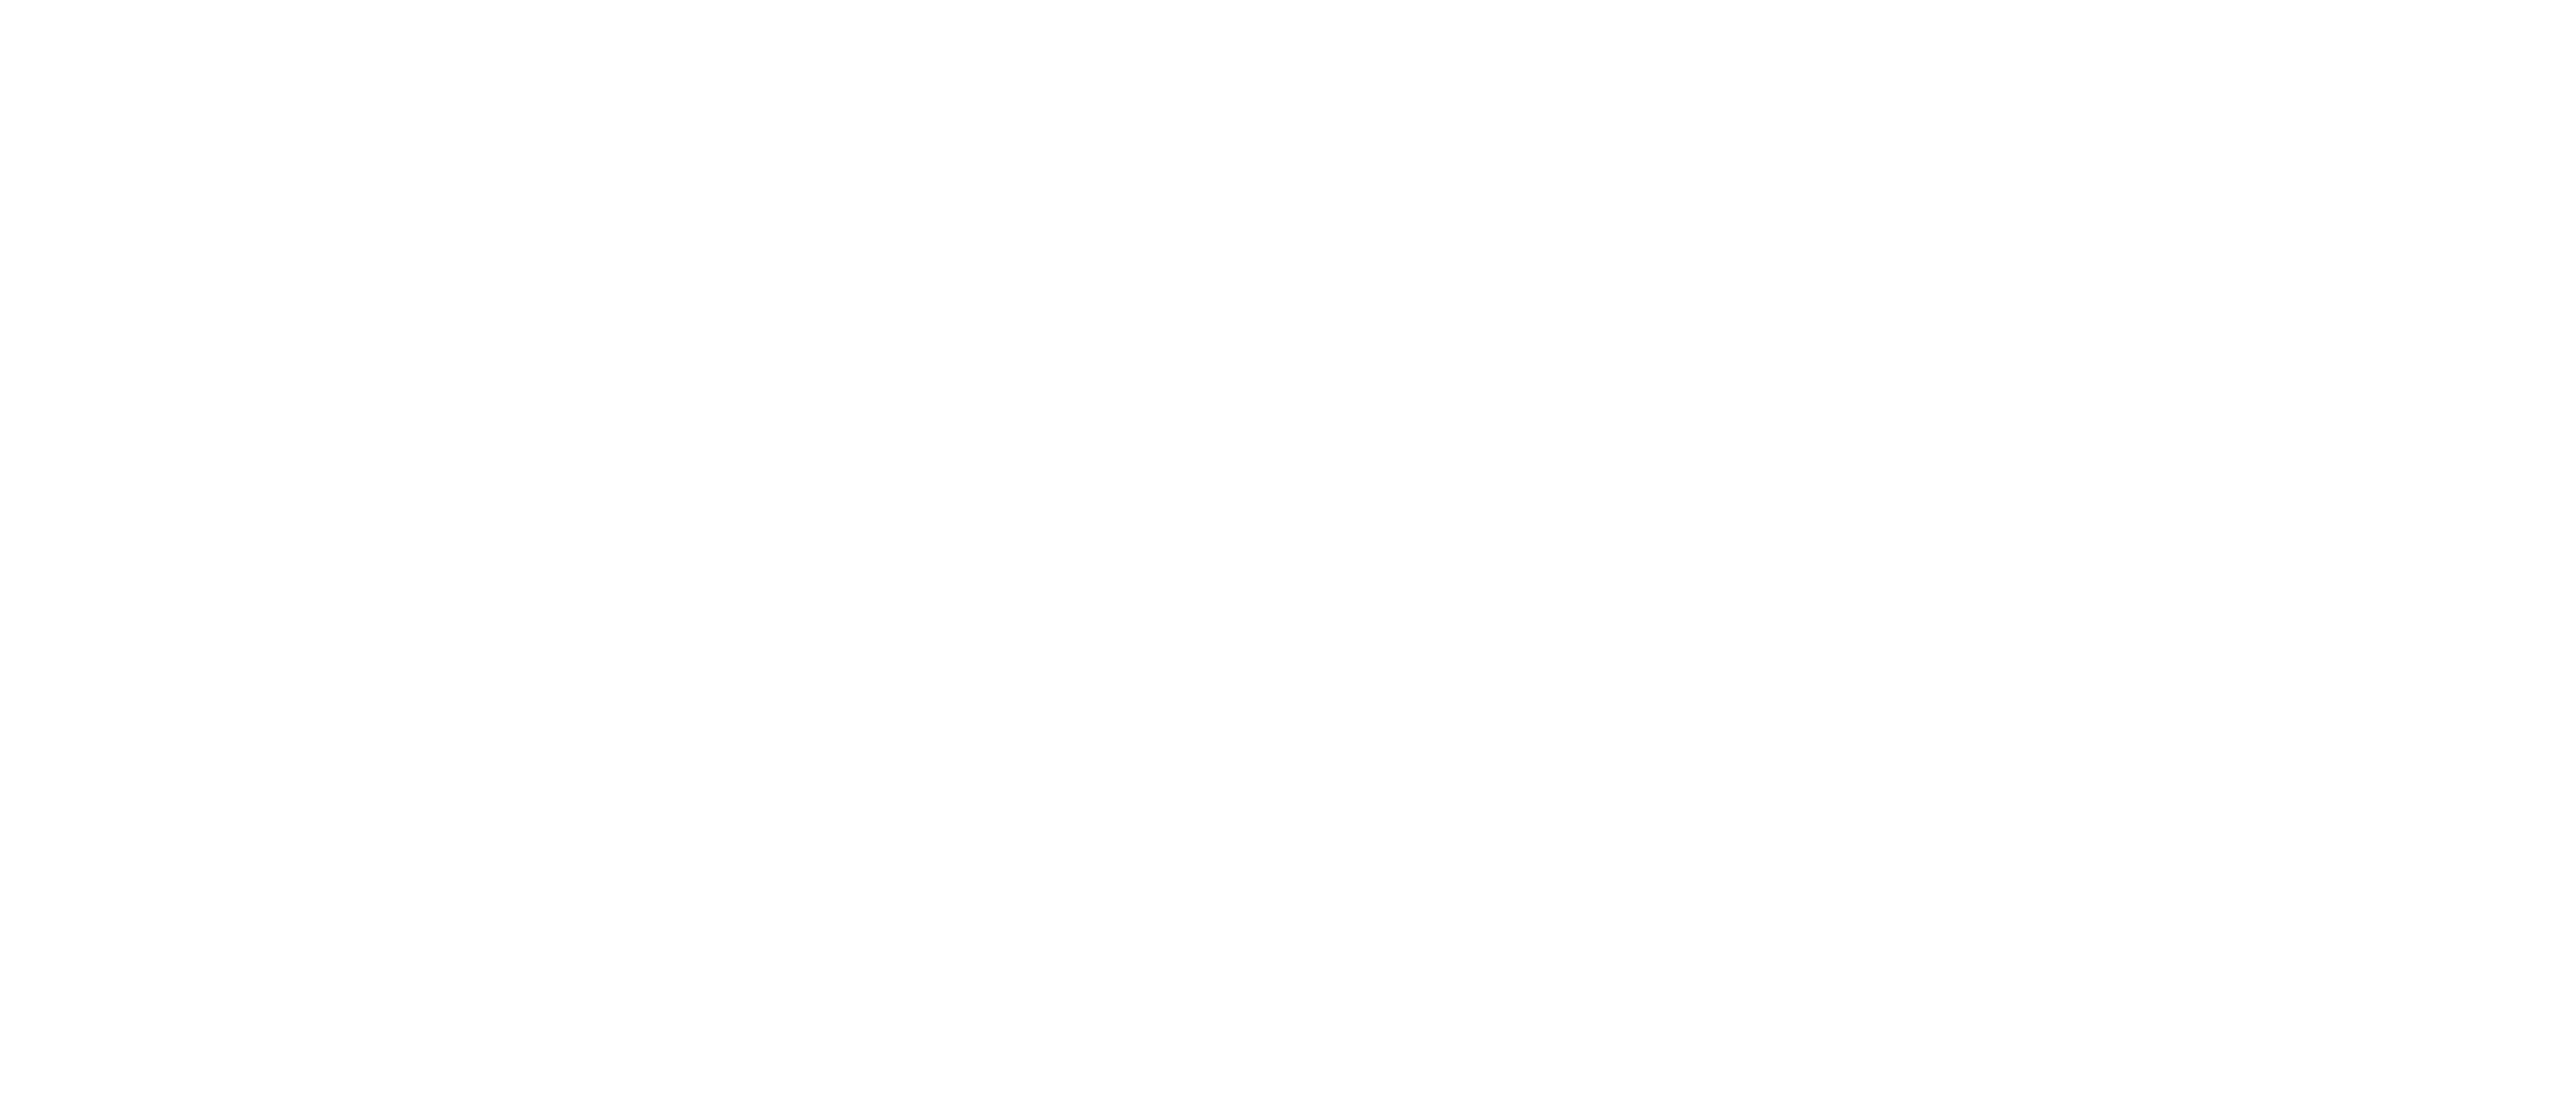 Your Gut Feeling logo white